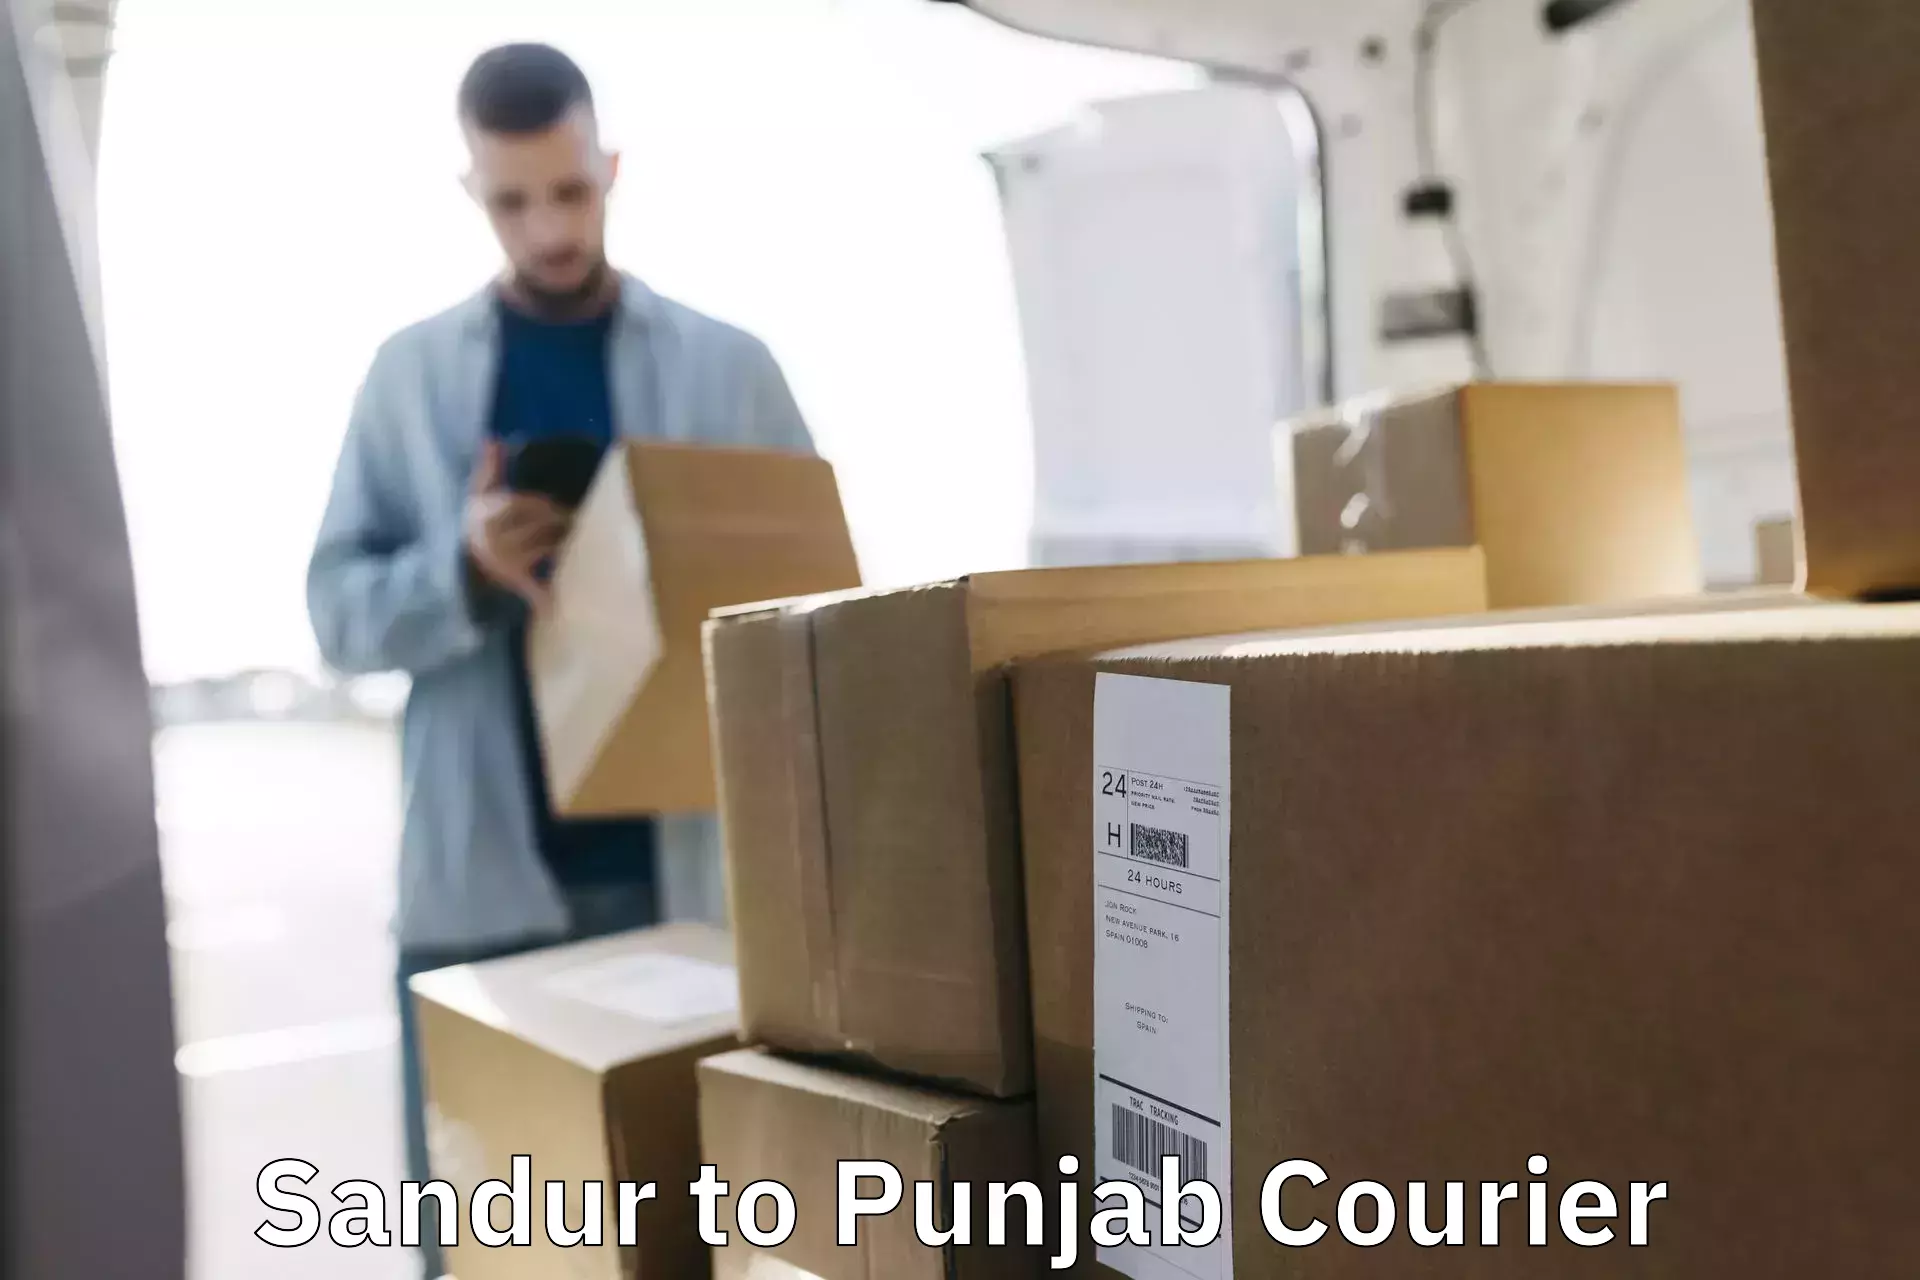 Express package handling Sandur to Punjab